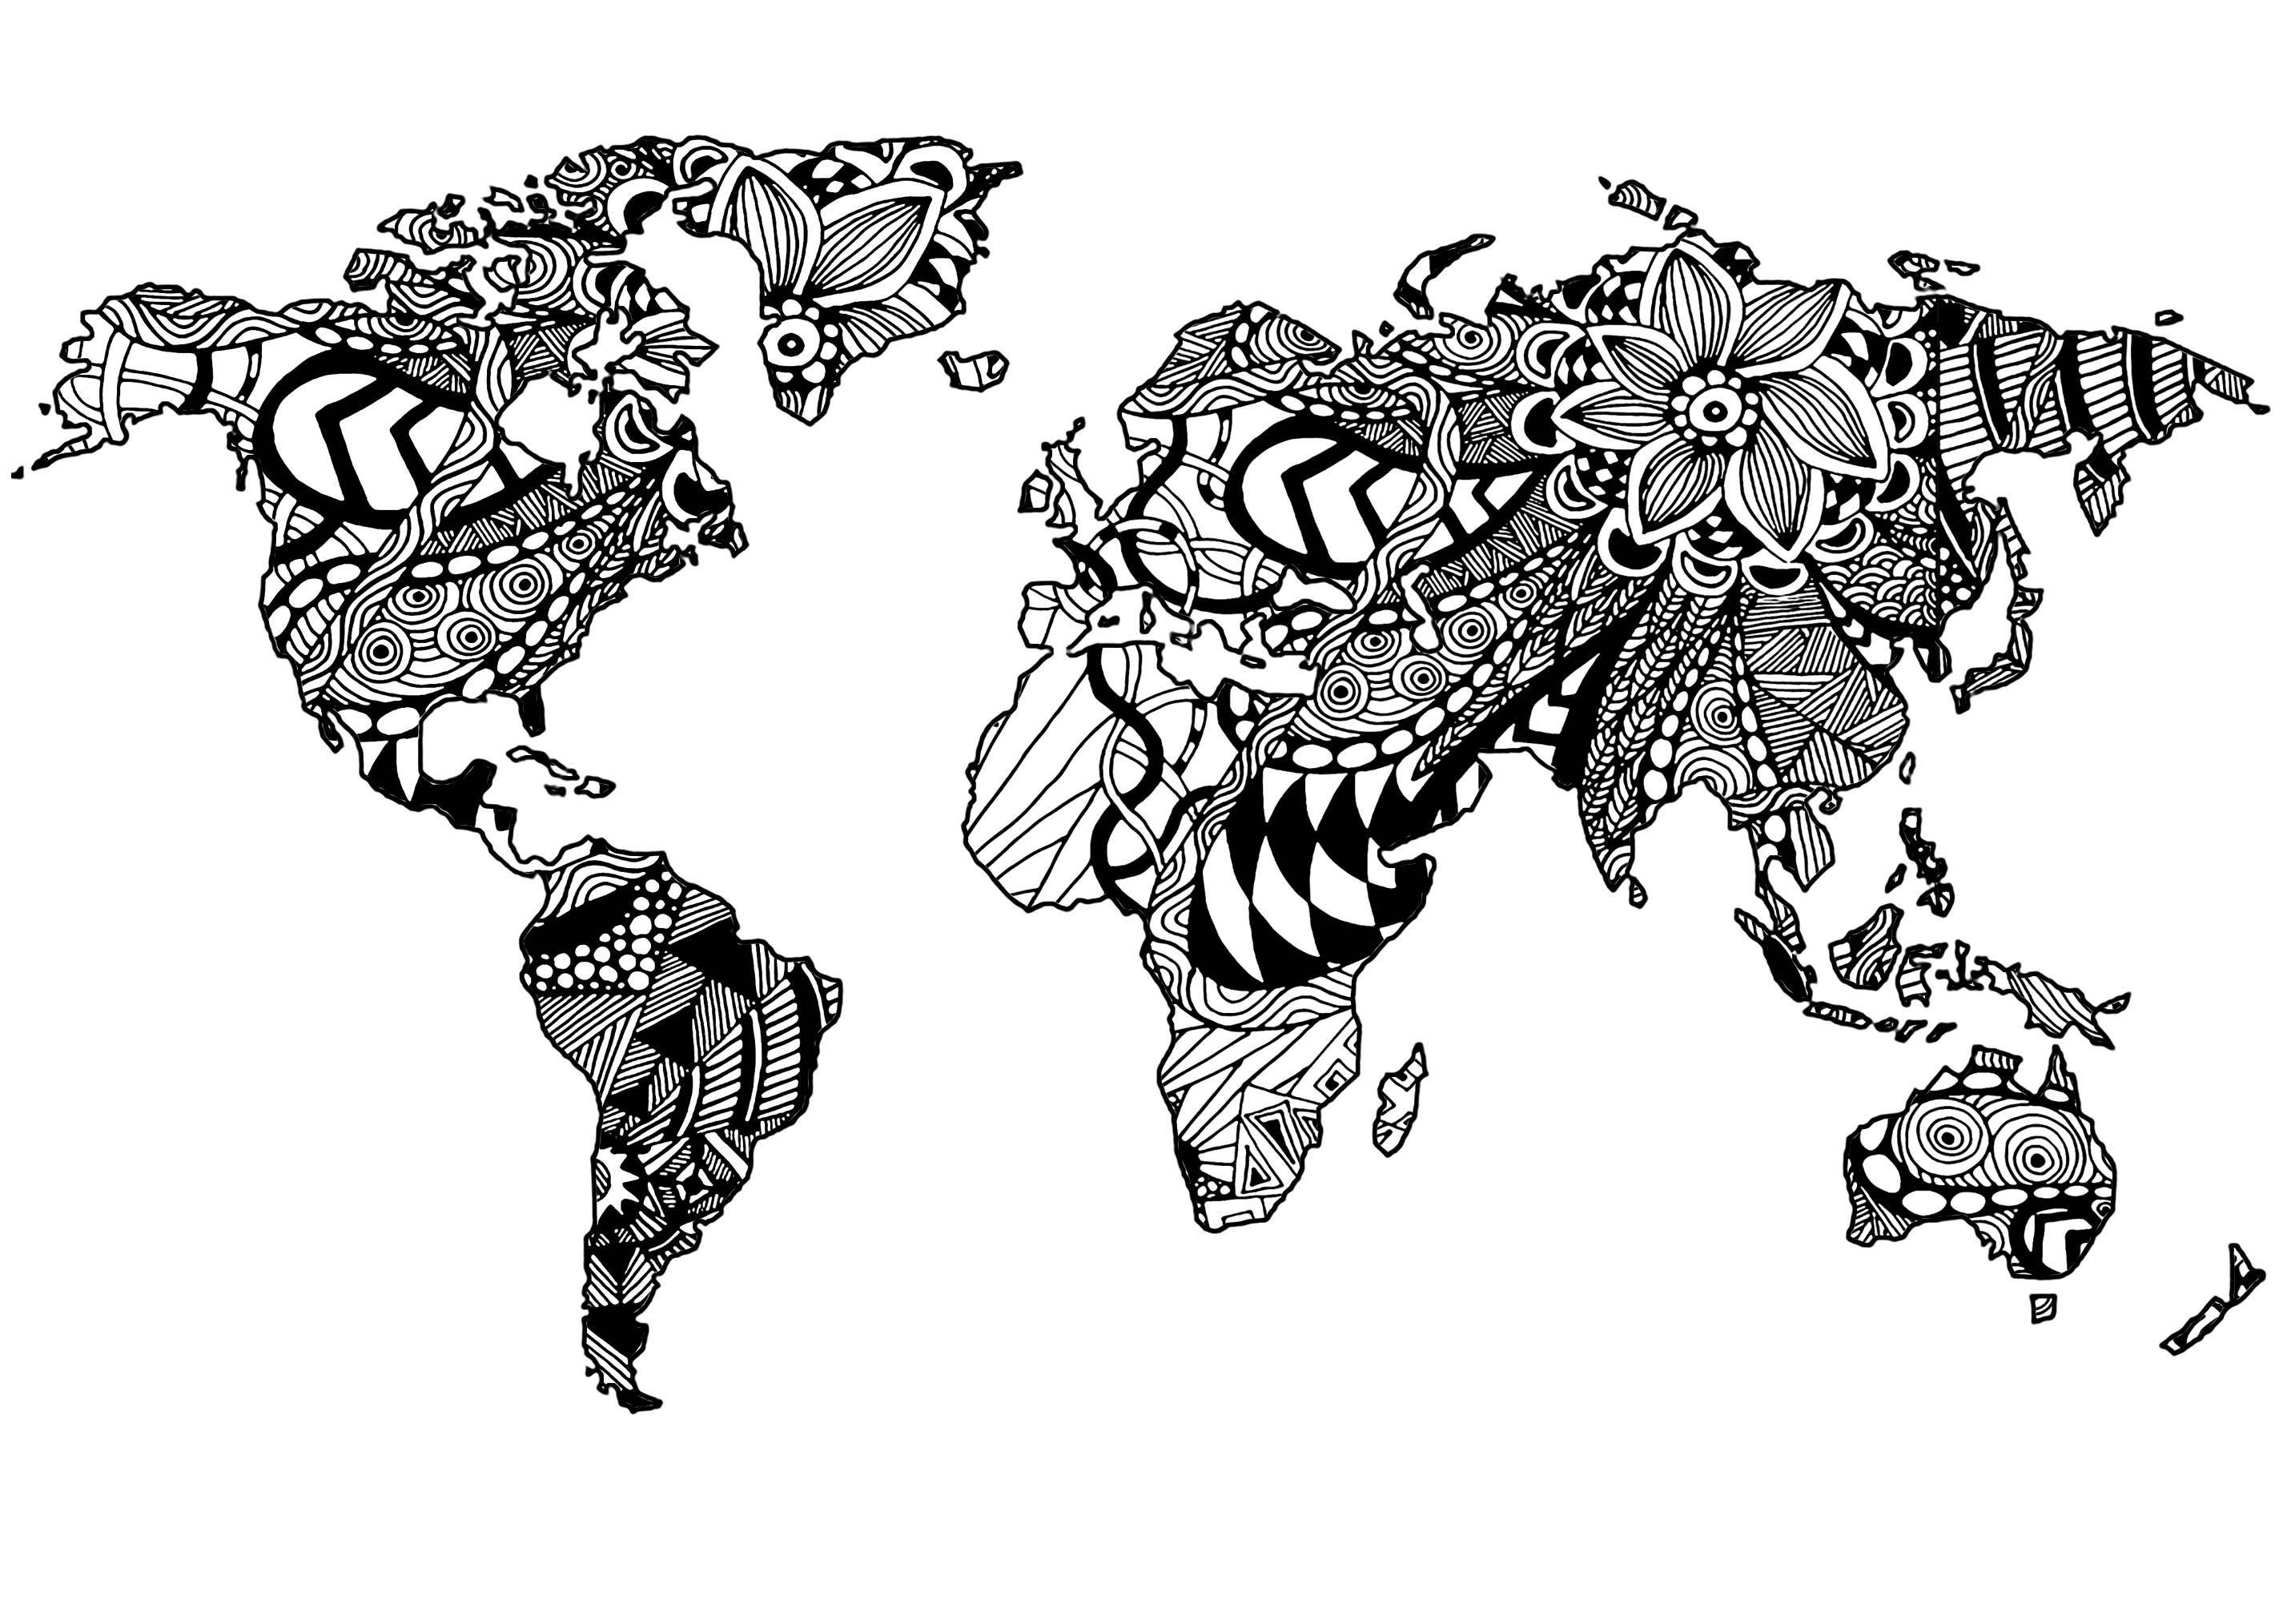 La Terre et des motifs Zentangle complexes (dans les continents)